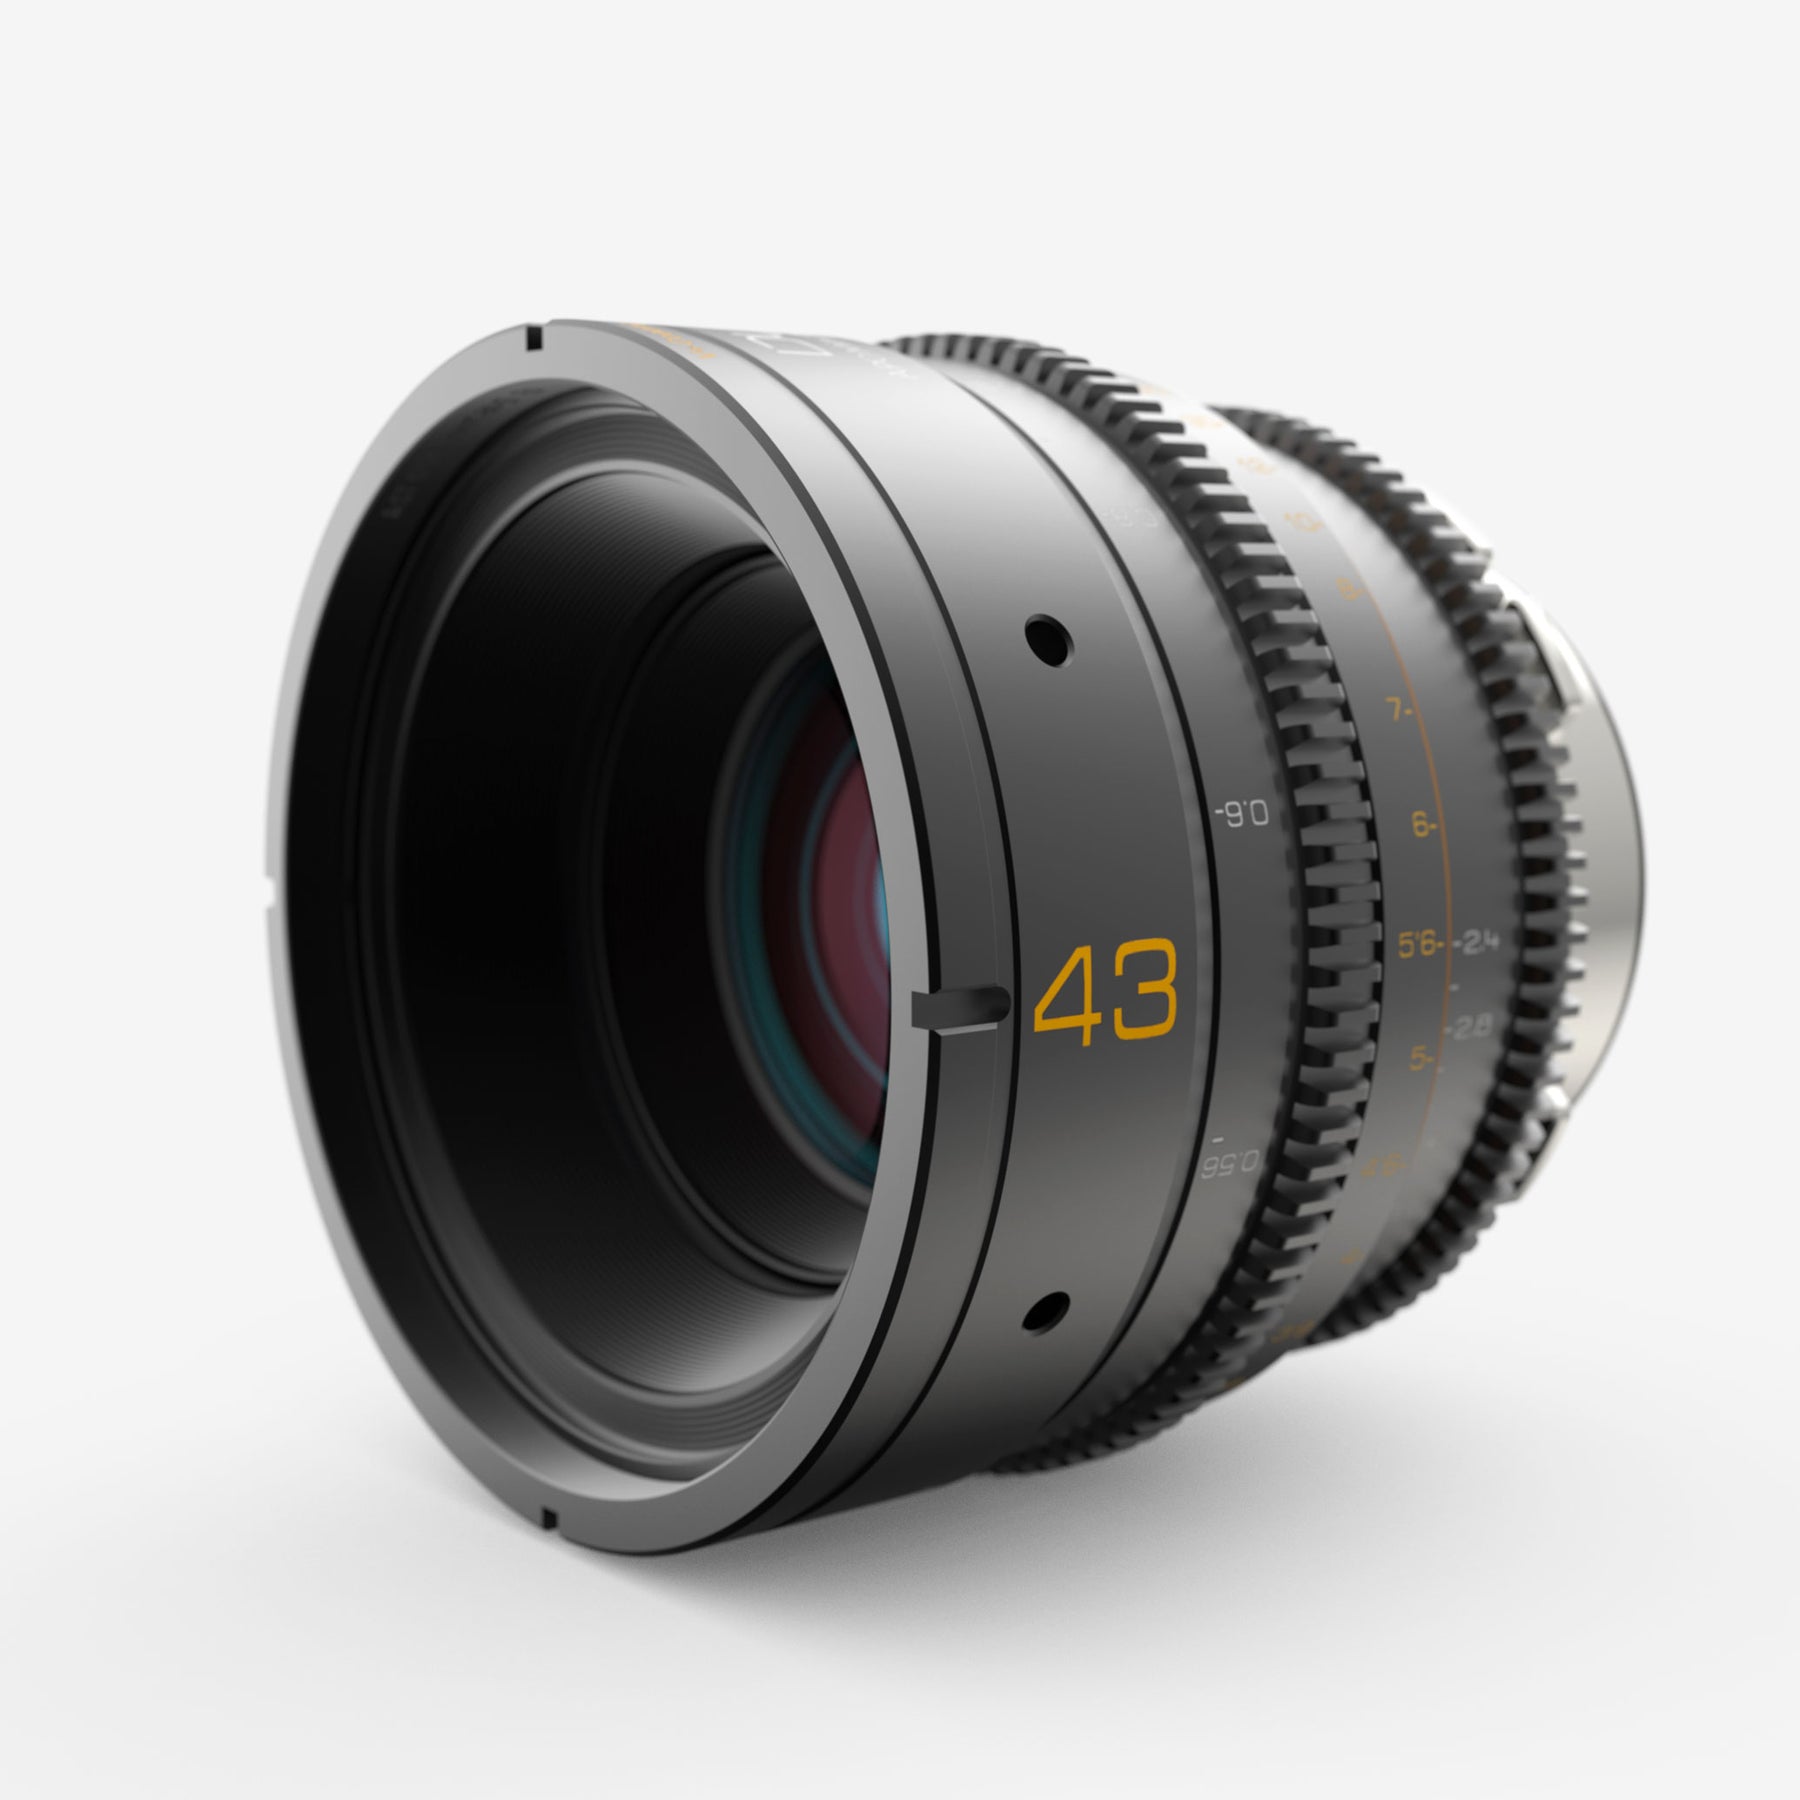 Dulens APO Mini Prime 43mm T2.4 Lens